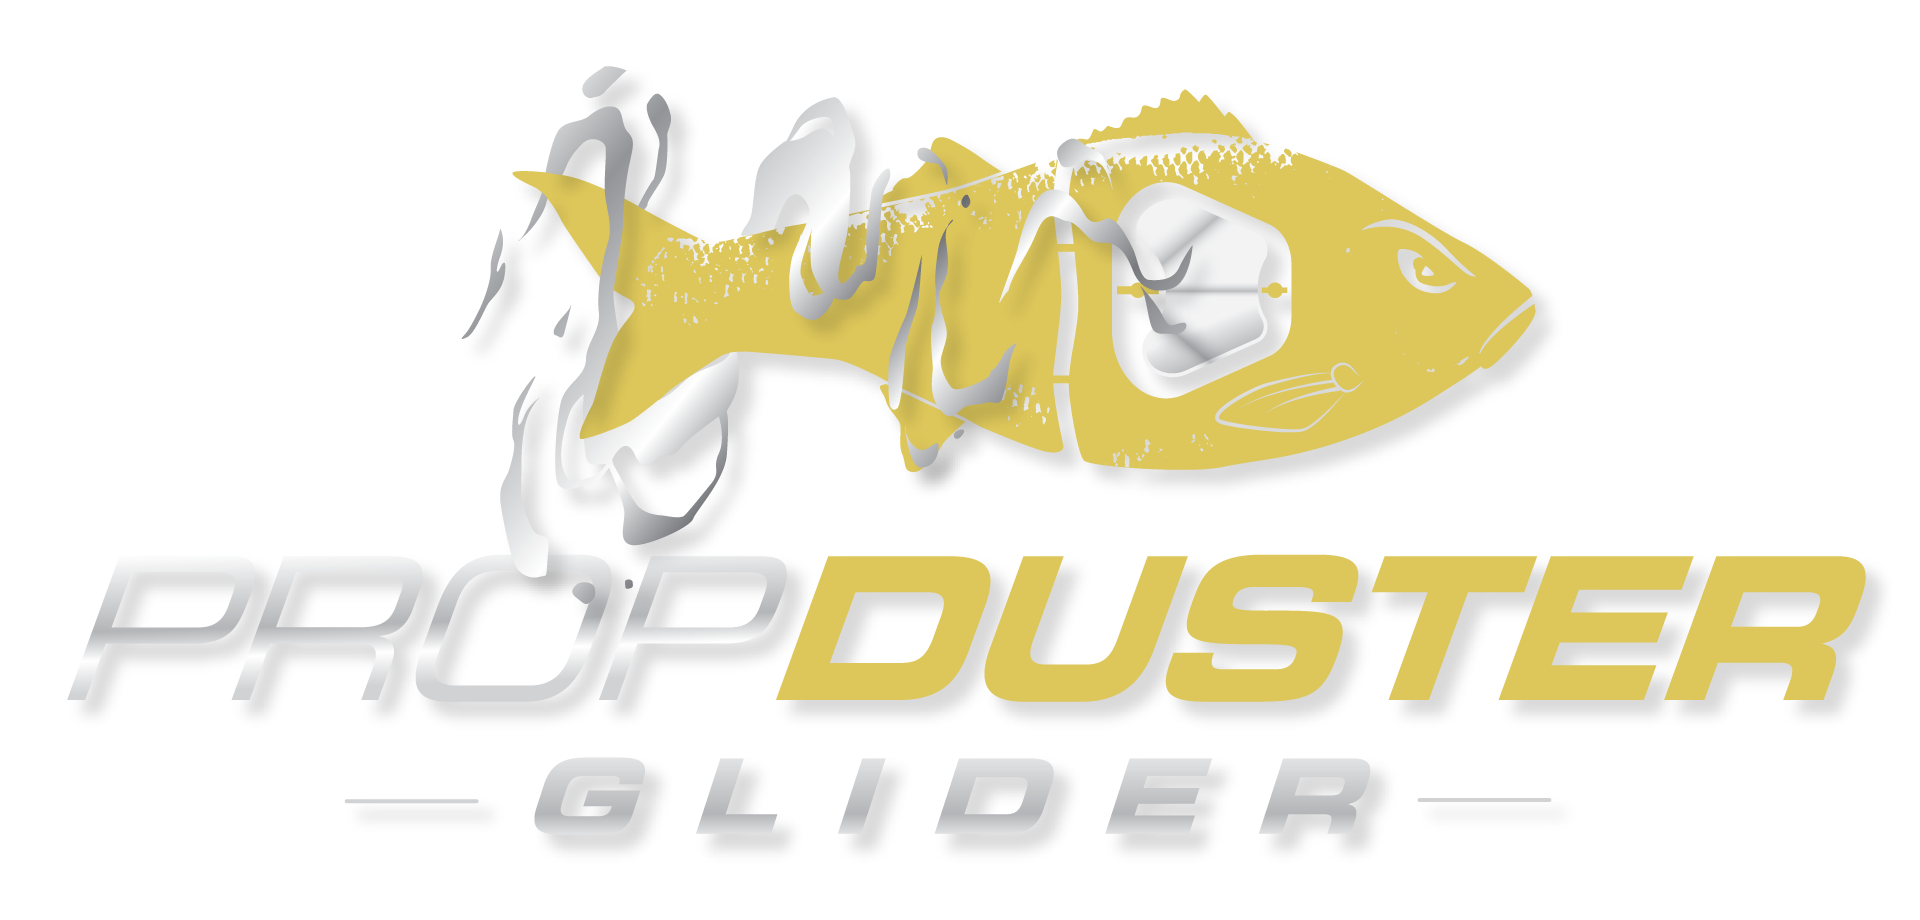 The Propduster Glider - Chasebaits Australia